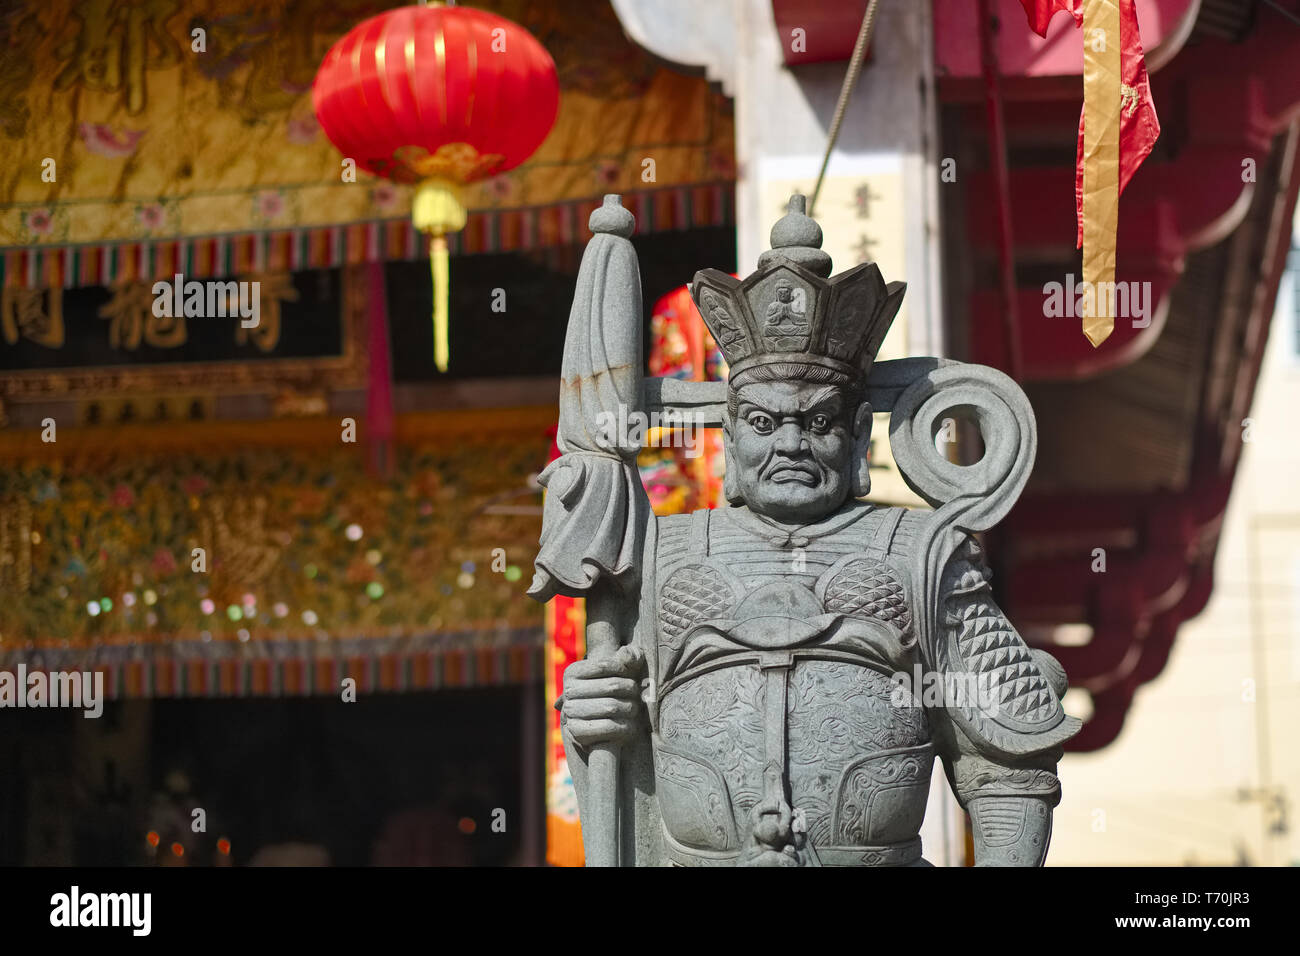 Eine wild aussehende Schutzfigur, die den Eingang zum (taoistischen) Jui TUI Tempel in Phuket, Phuket, Thailand, bewacht Stockfoto